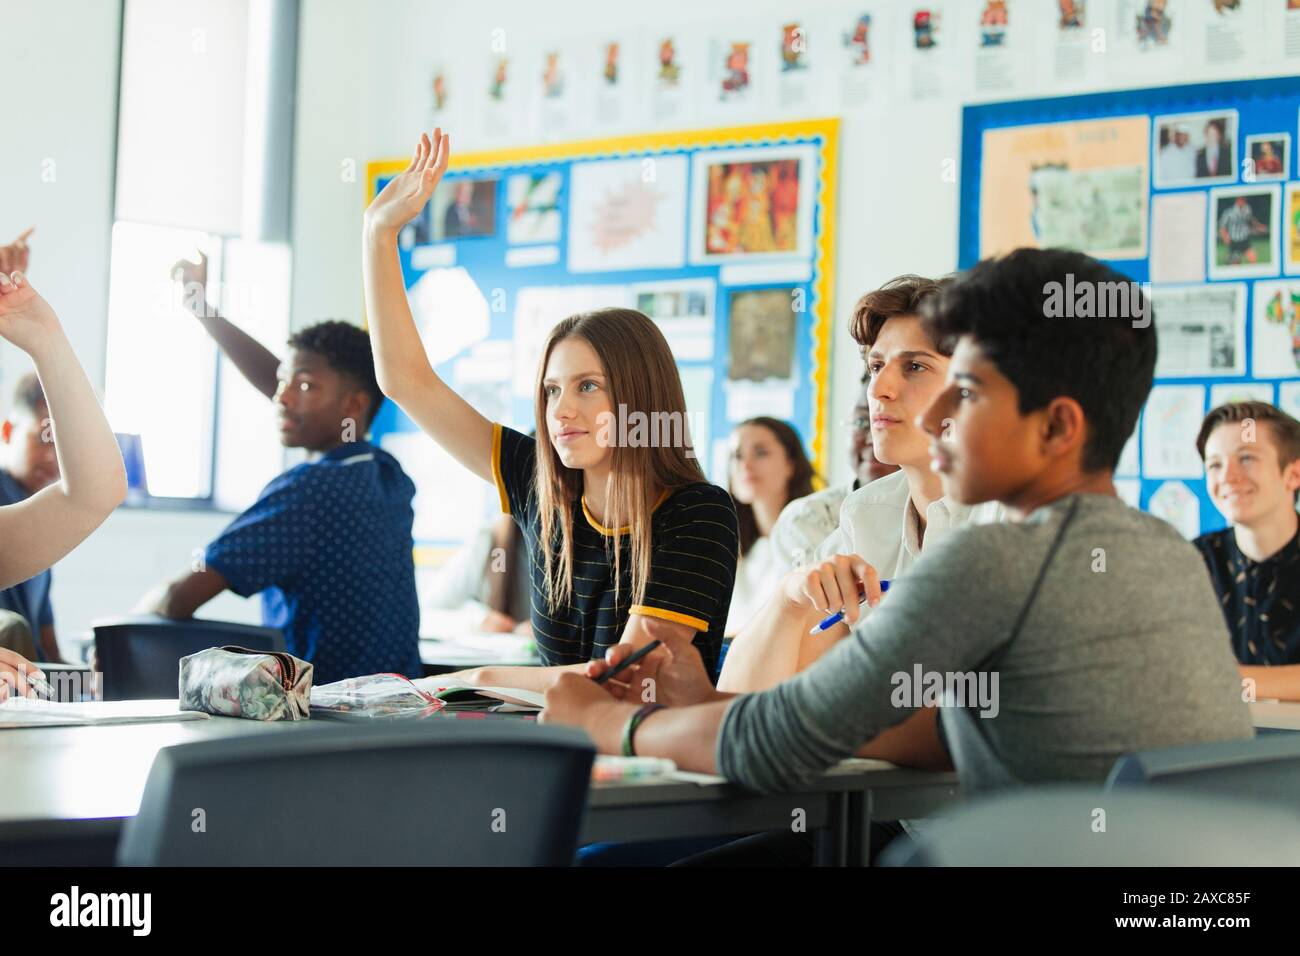 Schüler der High School mit erhobenen Händen, die während des Unterrichts im Klassenzimmer Fragen stellen Stockfoto